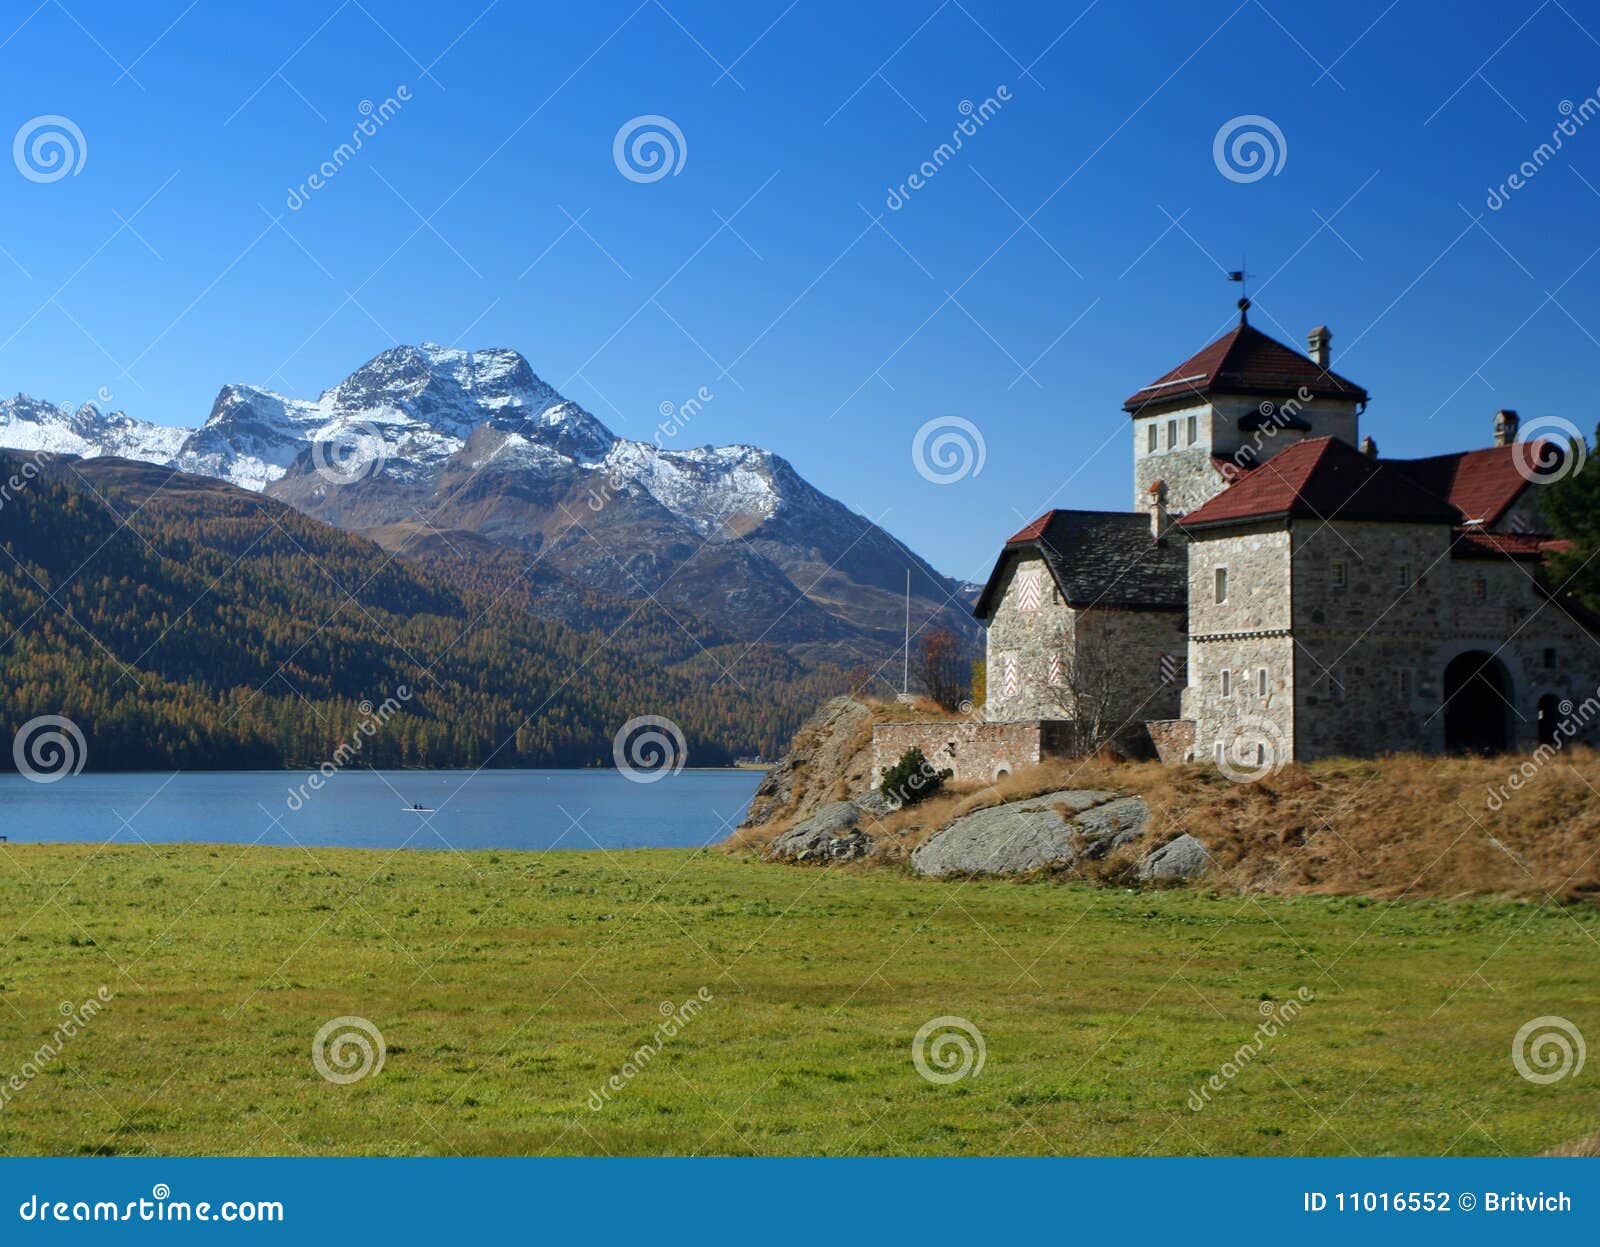 κάστρο Ελβετία. το αλπικό κάστρο καντονίου η λίμνη Ελβετός